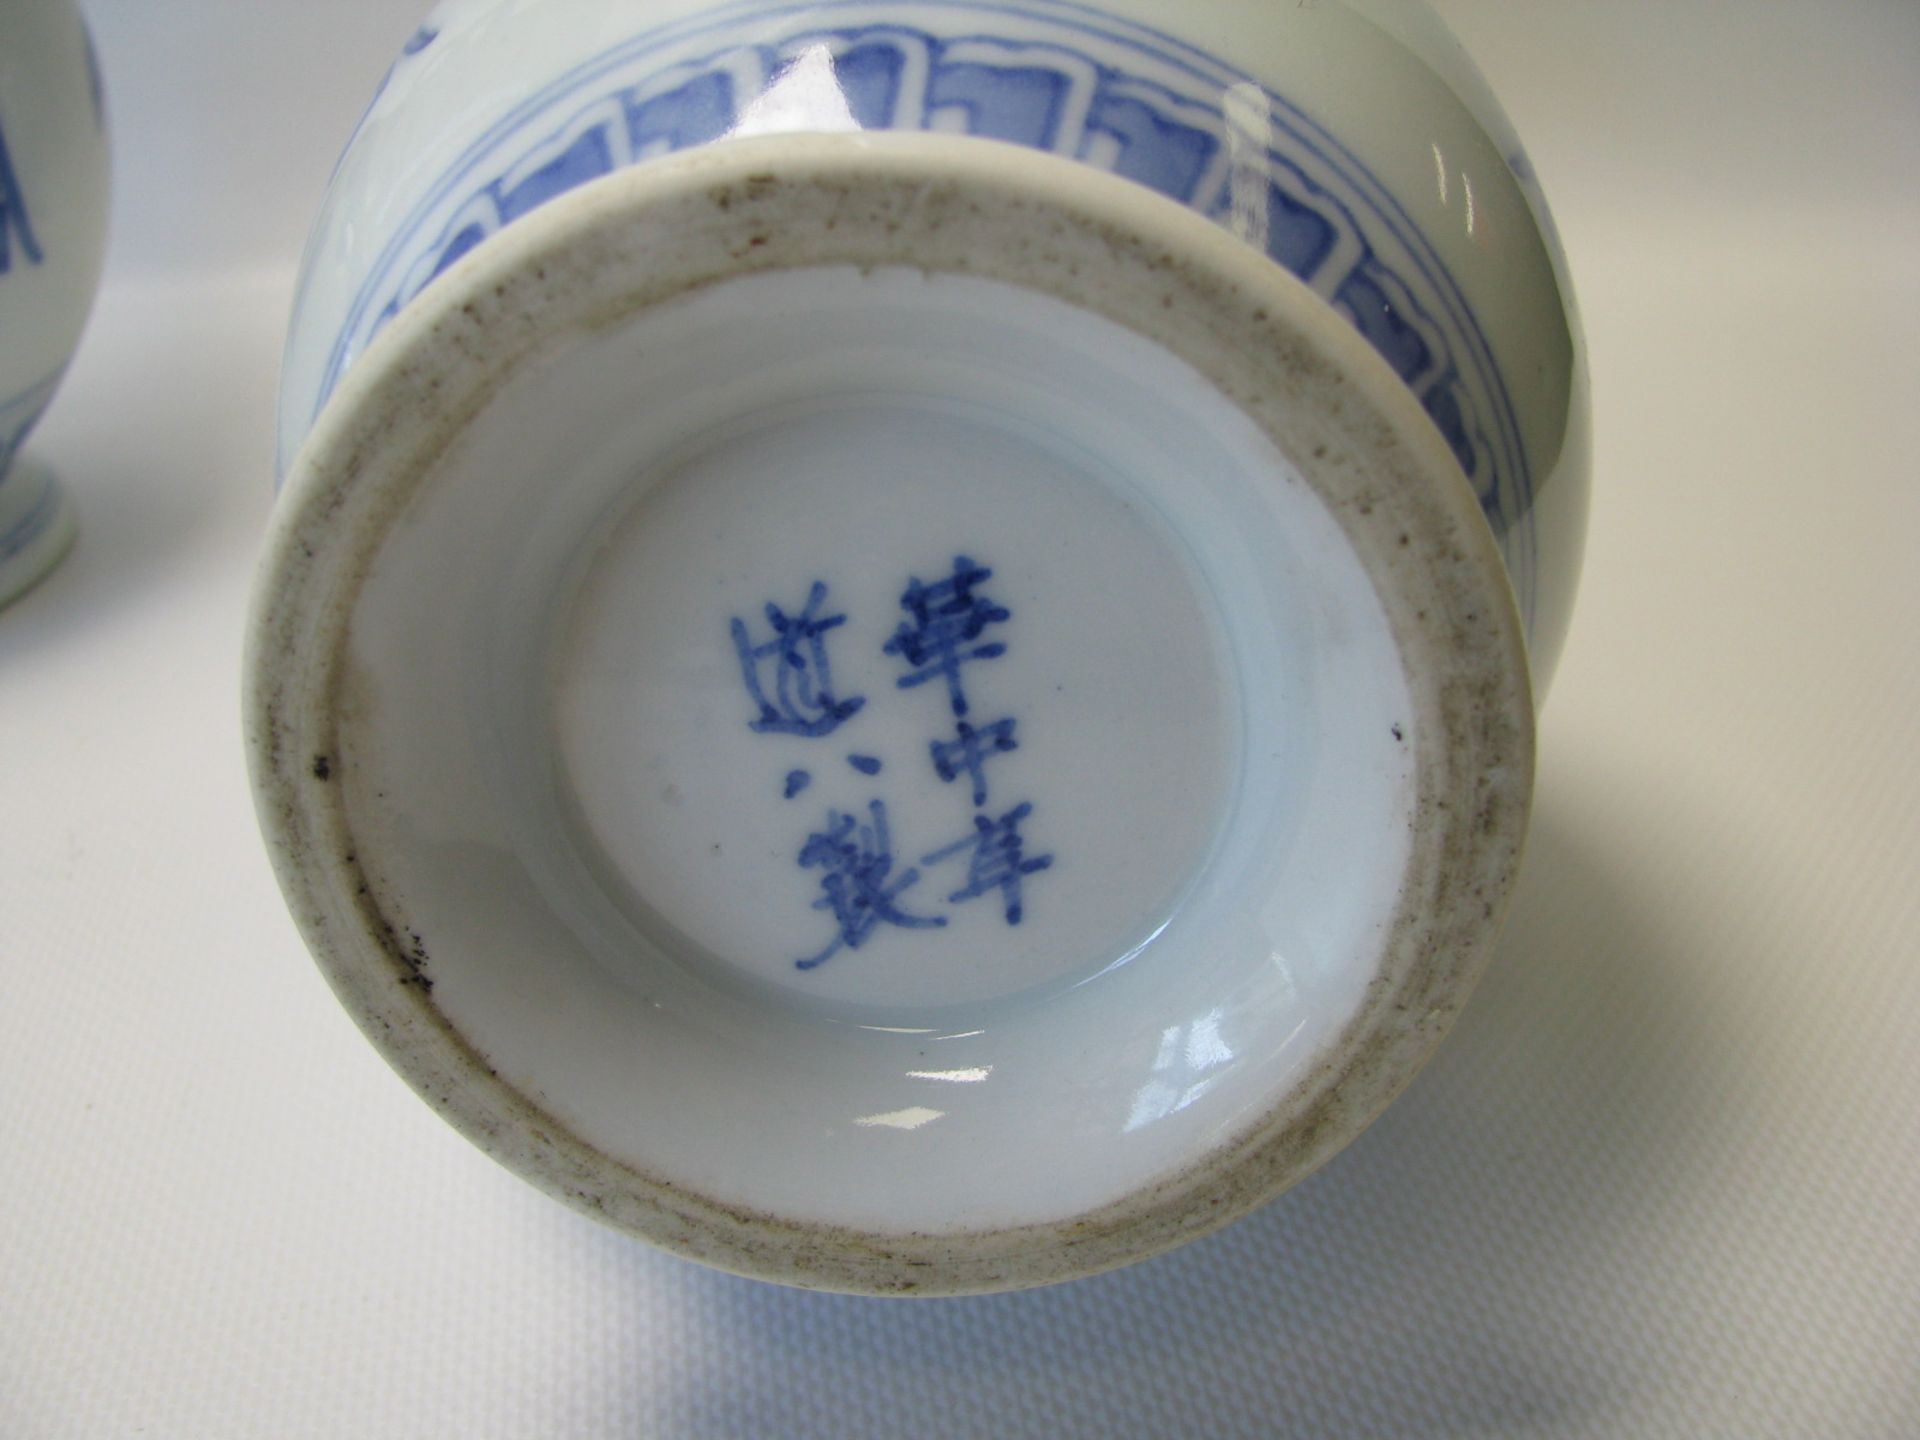 2 Vasen, China, Weißporzellan mit blauer Bemalung, 6-Zeichen-Marke, h 24 cm, d 11 cm. - Bild 2 aus 2